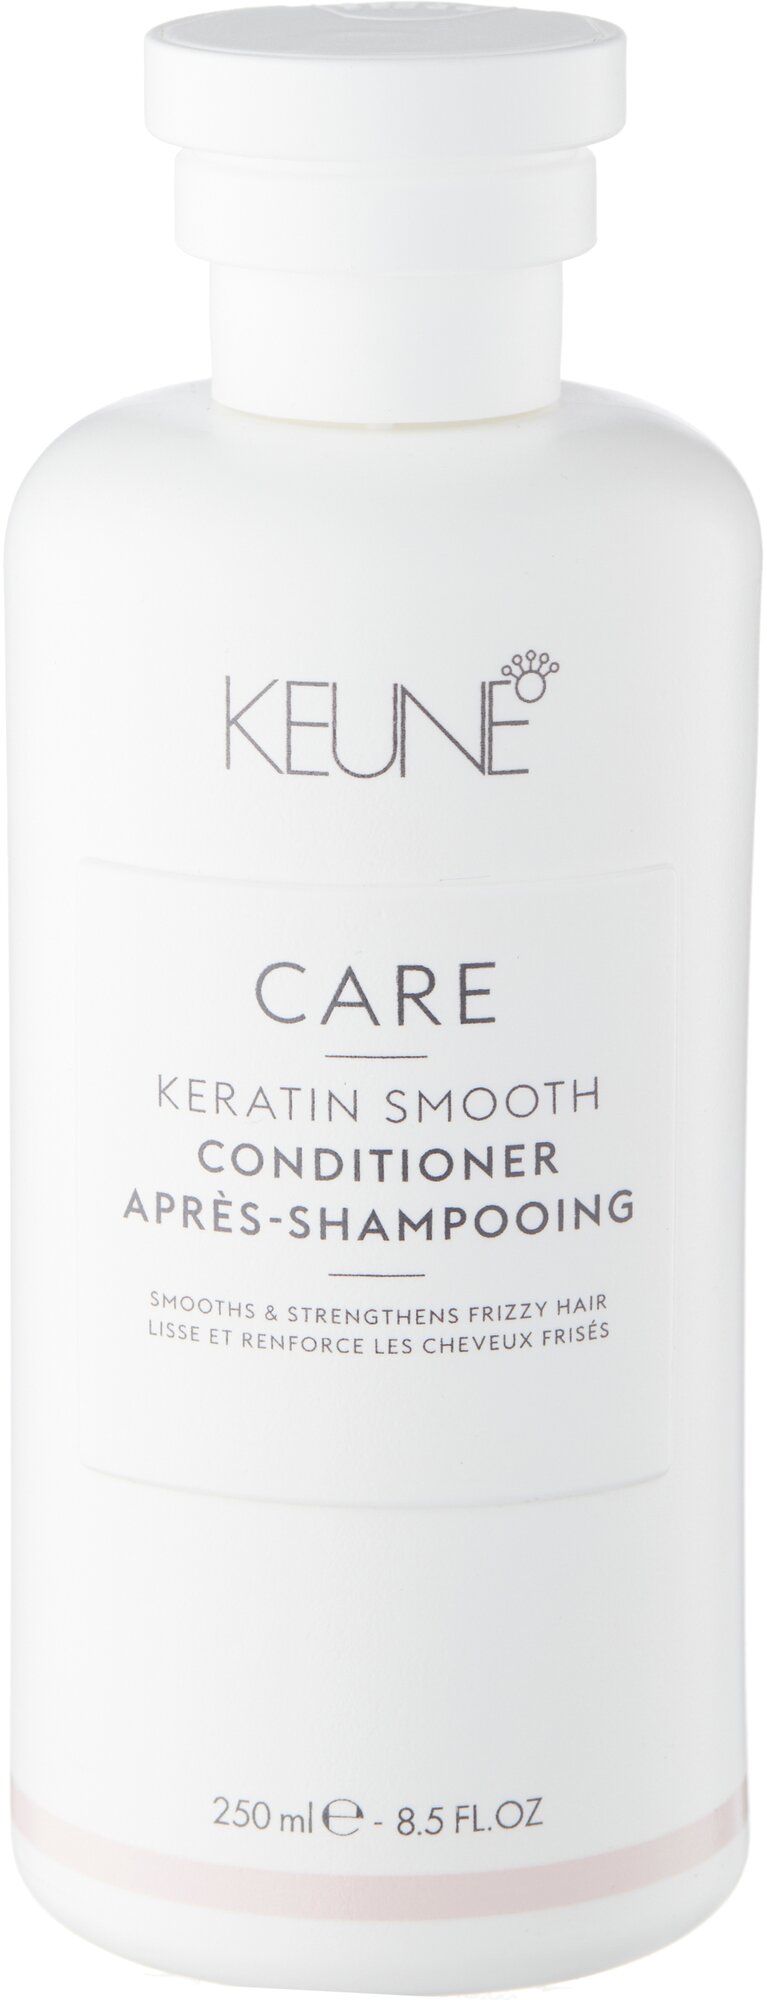 Keune кондиционер Care Keratin Smooth для нормальных сухих и поврежденных волос